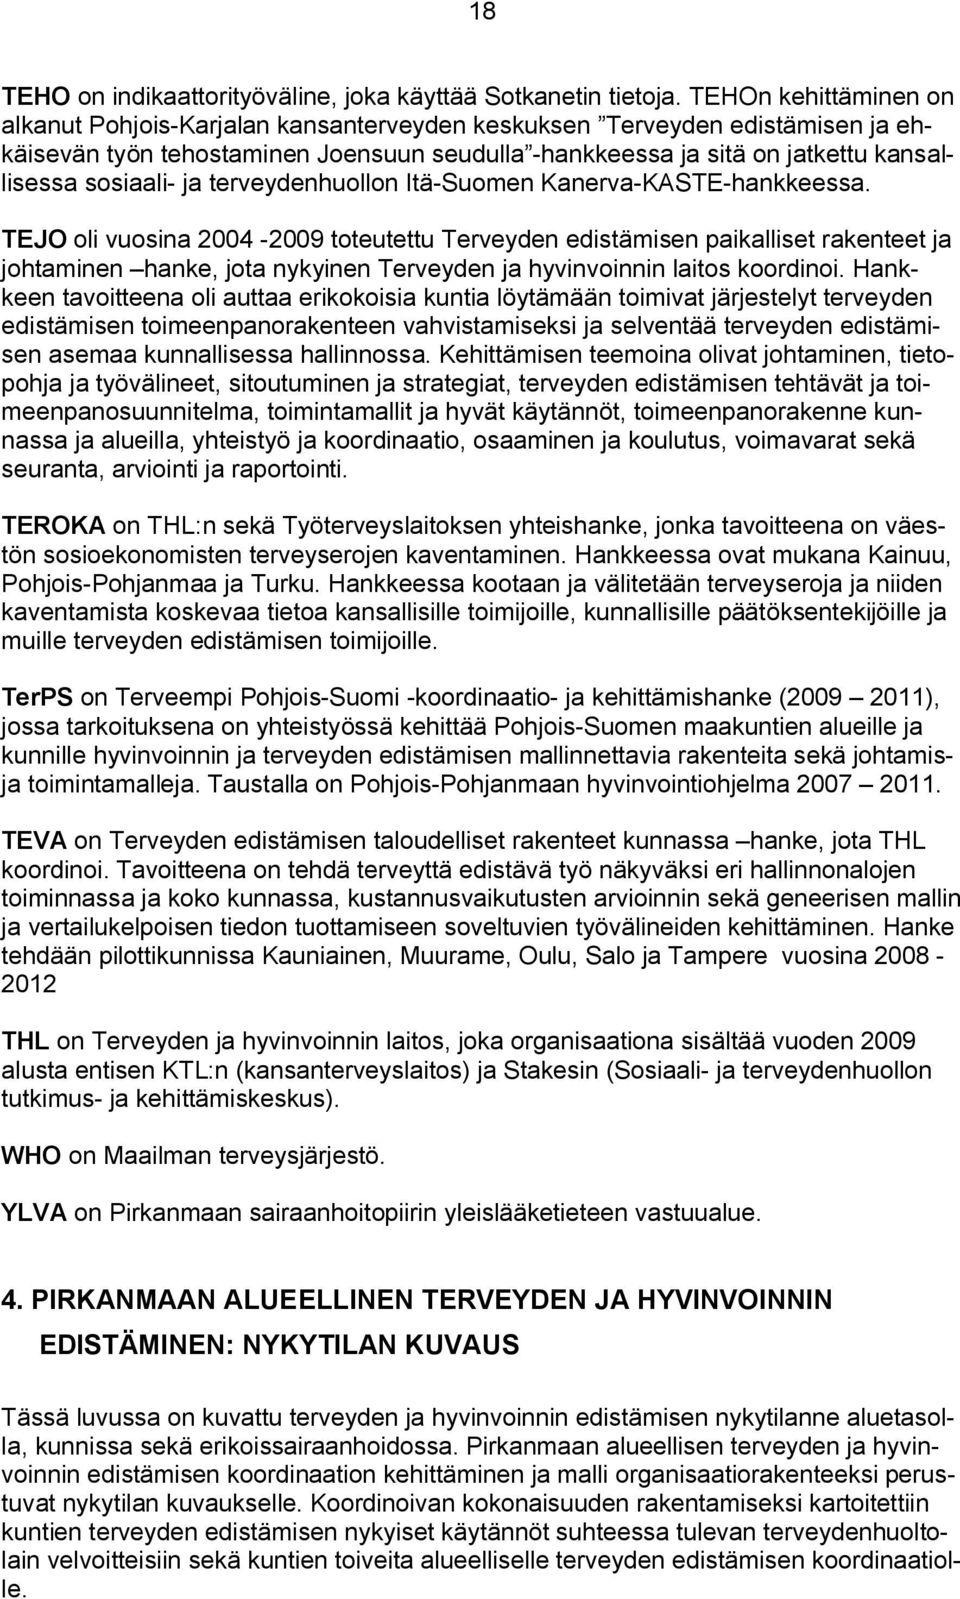 sosiaali- ja terveydenhuollon Itä-Suomen Kanerva-KASTE-hankkeessa.